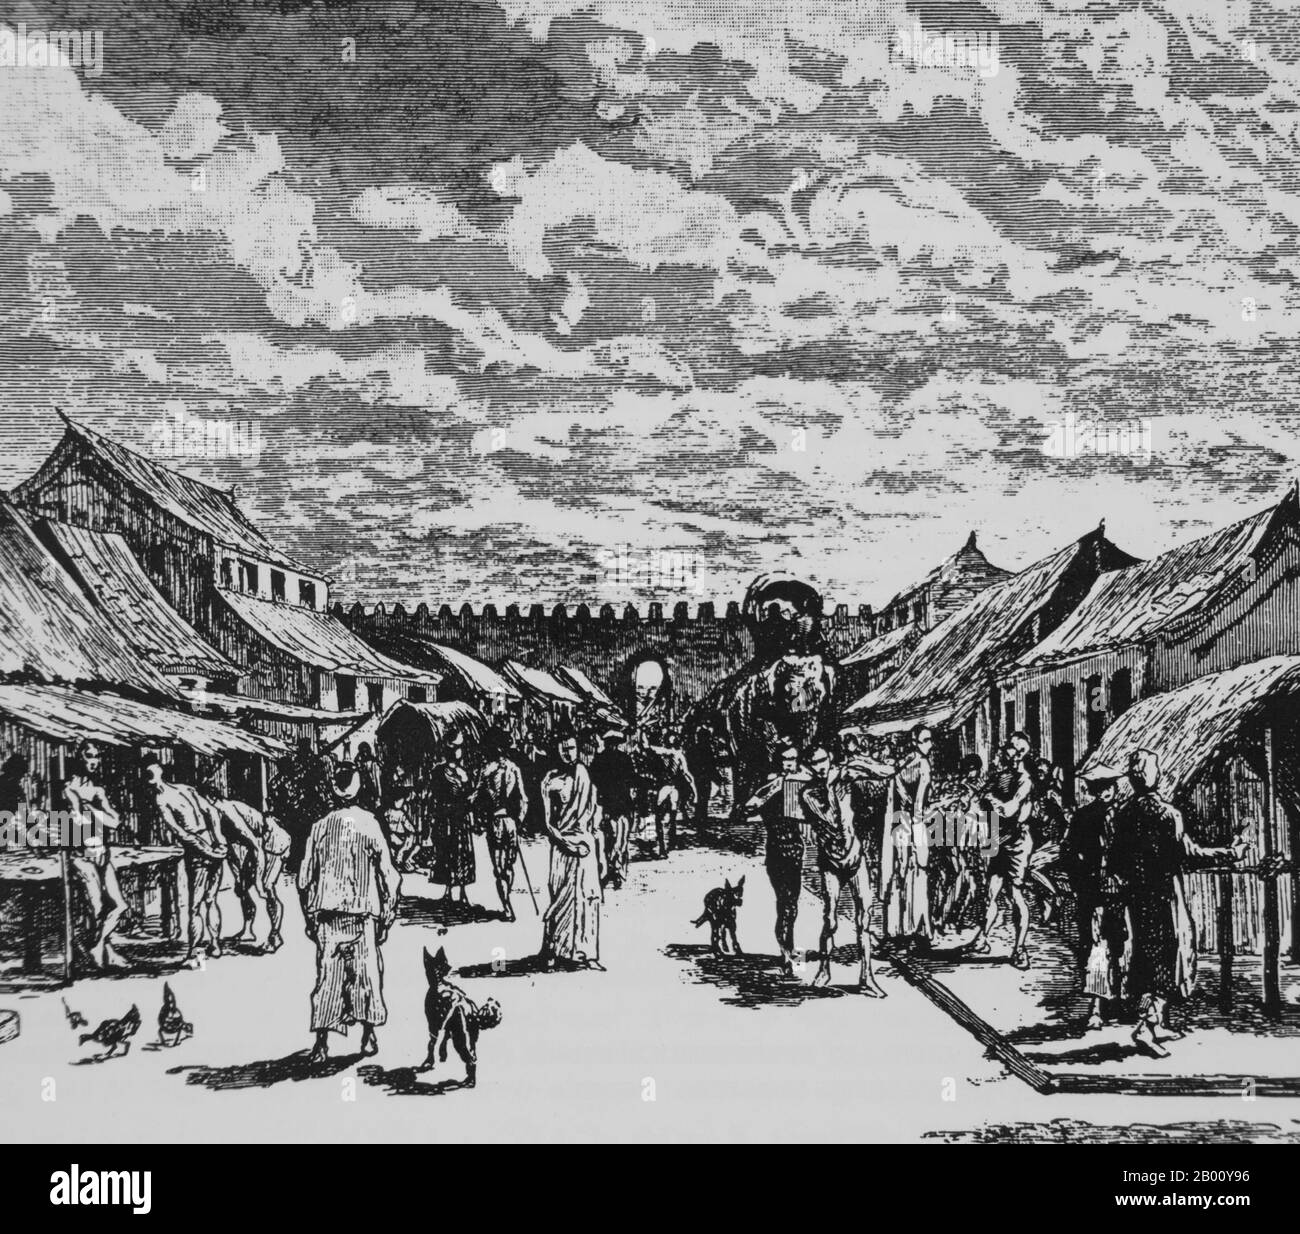 Thaïlande: Vue de l'intérieur de la ville de Chiang Mai vers une porte de la ville. Depuis le Tour du monde (Paris), 1885. Le roi Mengrai fonda la ville de Chiang Mai (c'est-à-dire « nouvelle ville ») en 1296, et il succéda à Chiang Rai comme capitale du royaume de Lanna. Chiang Mai, parfois écrit comme 'Chiengmai' ou 'Chiangmai', est la plus grande et la plus importante ville culturelle dans le nord de la Thaïlande. Banque D'Images